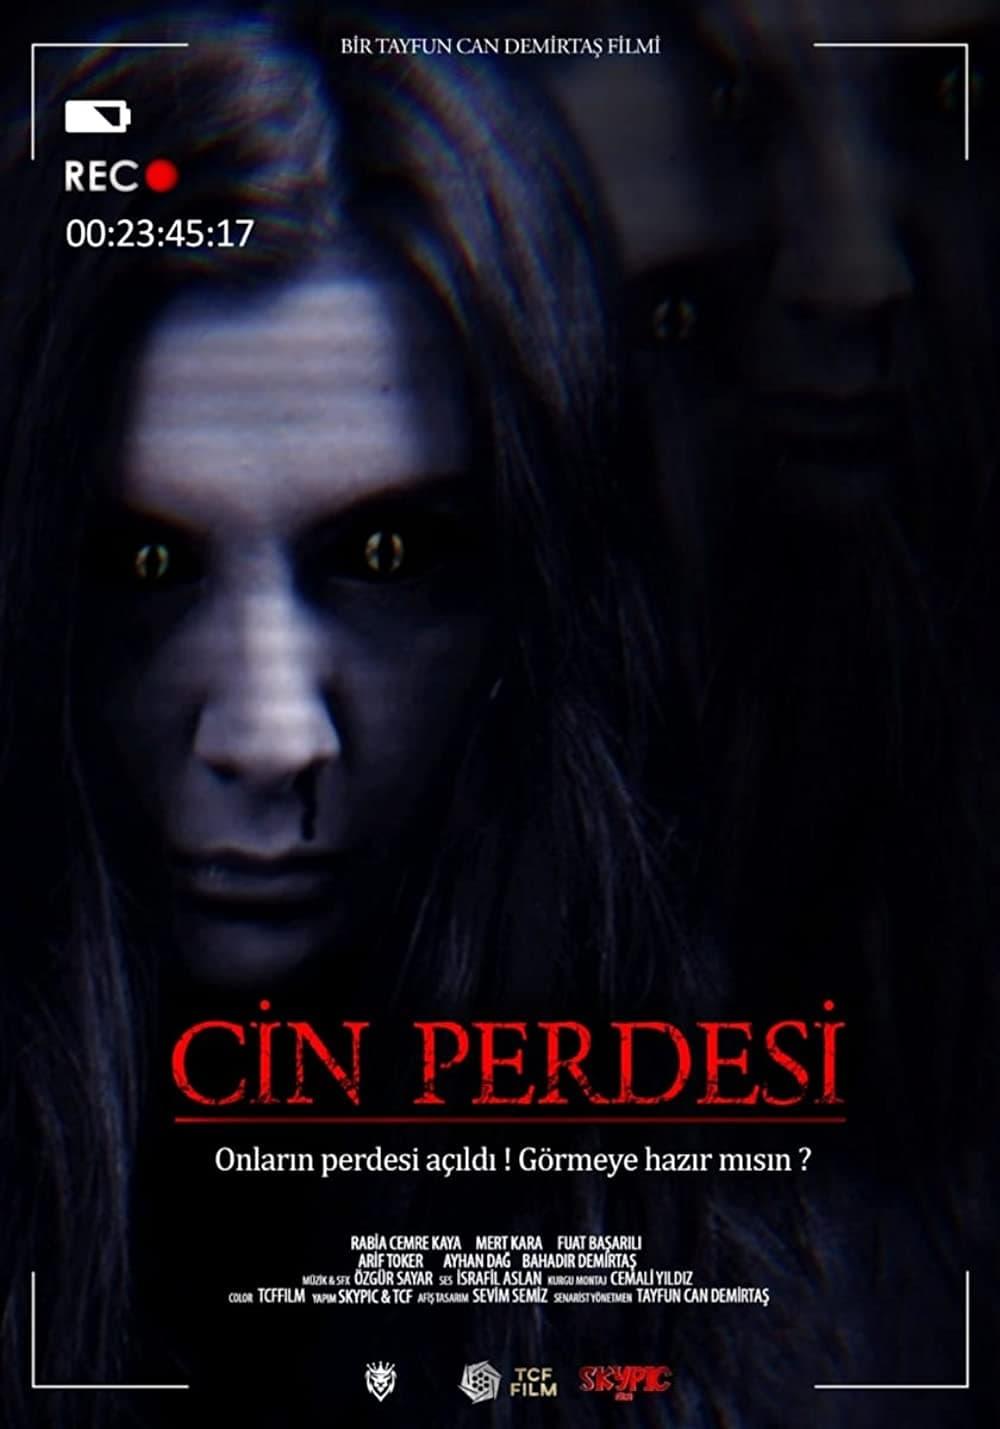 Cin Perdesi poster